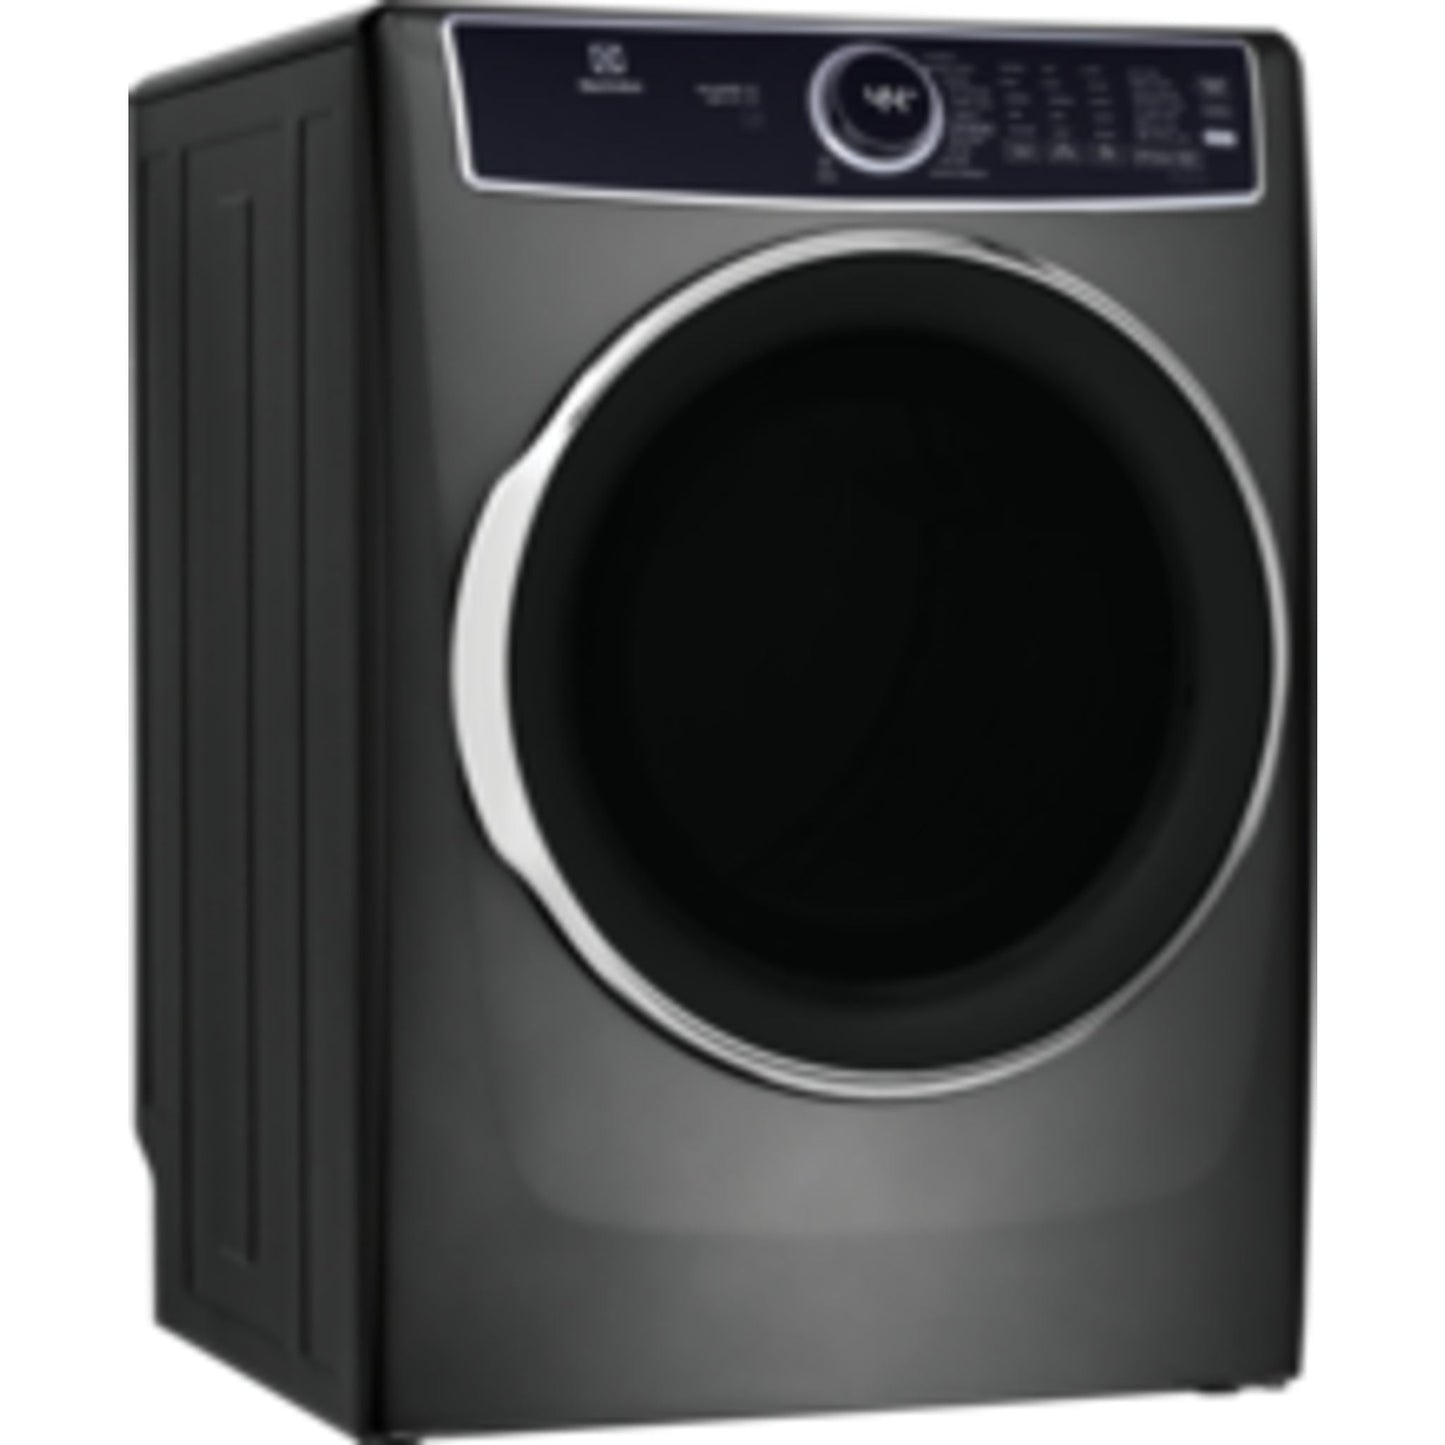 Electrolux Dryer (ELFE763CAT) - Titanium